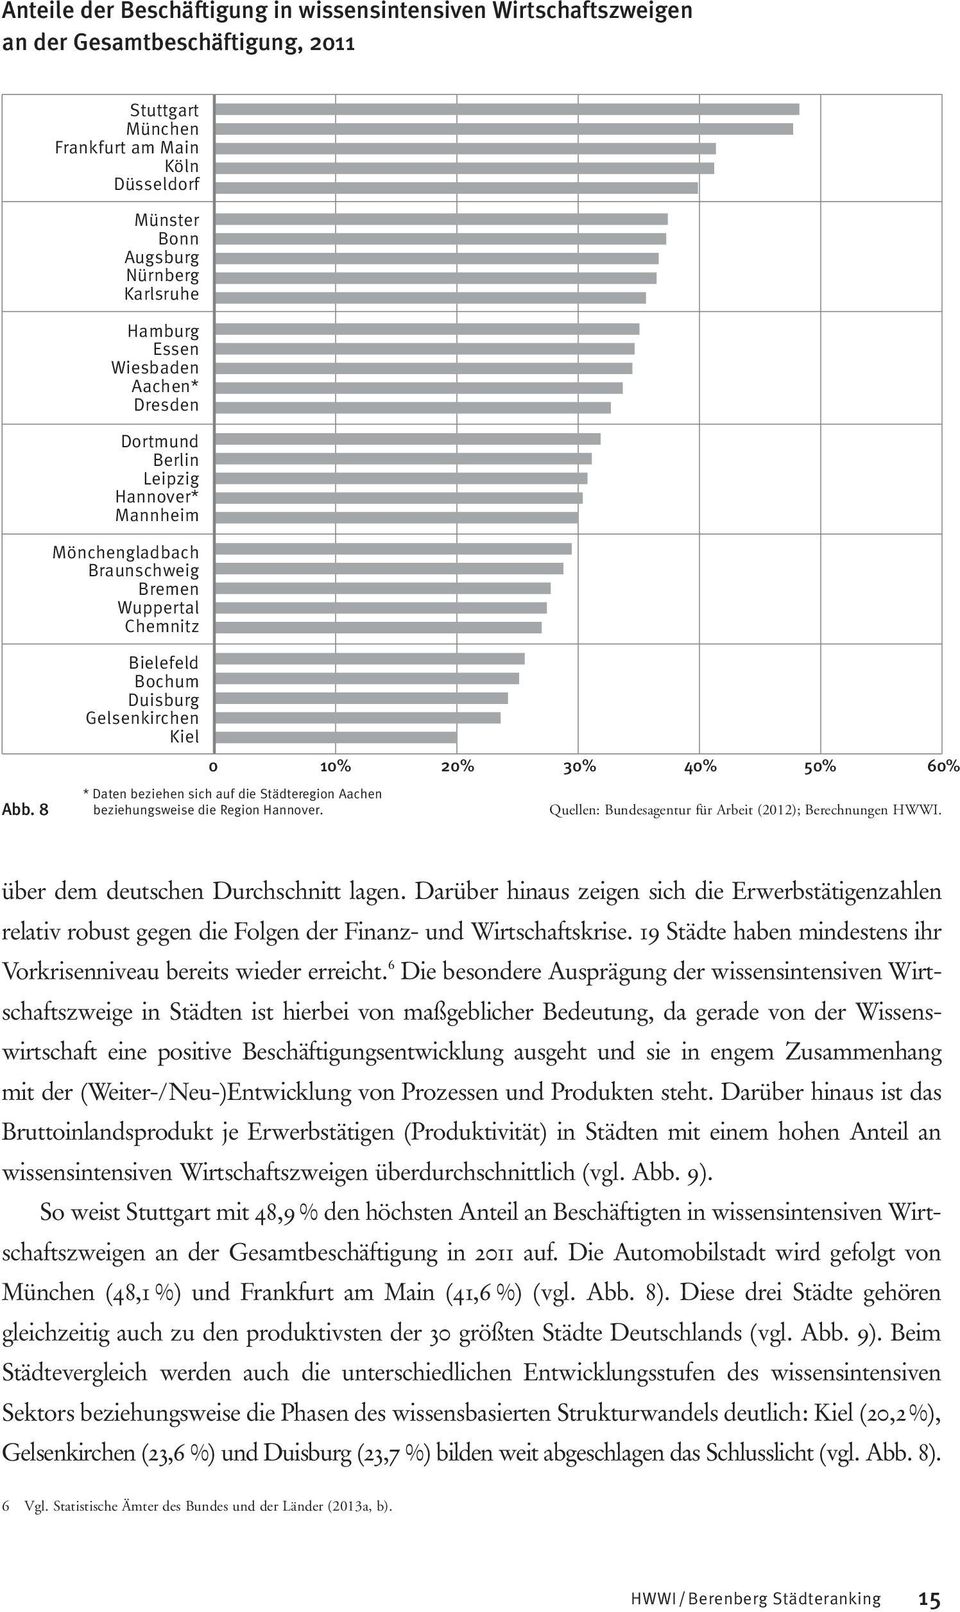 8 Bielefeld Bochum Duisburg Gelsenkirchen Kiel 0 10% 20% 30% 40% 50% 60% * Daten beziehen sich auf die Städteregion Aachen beziehungsweise die Region Hannover.